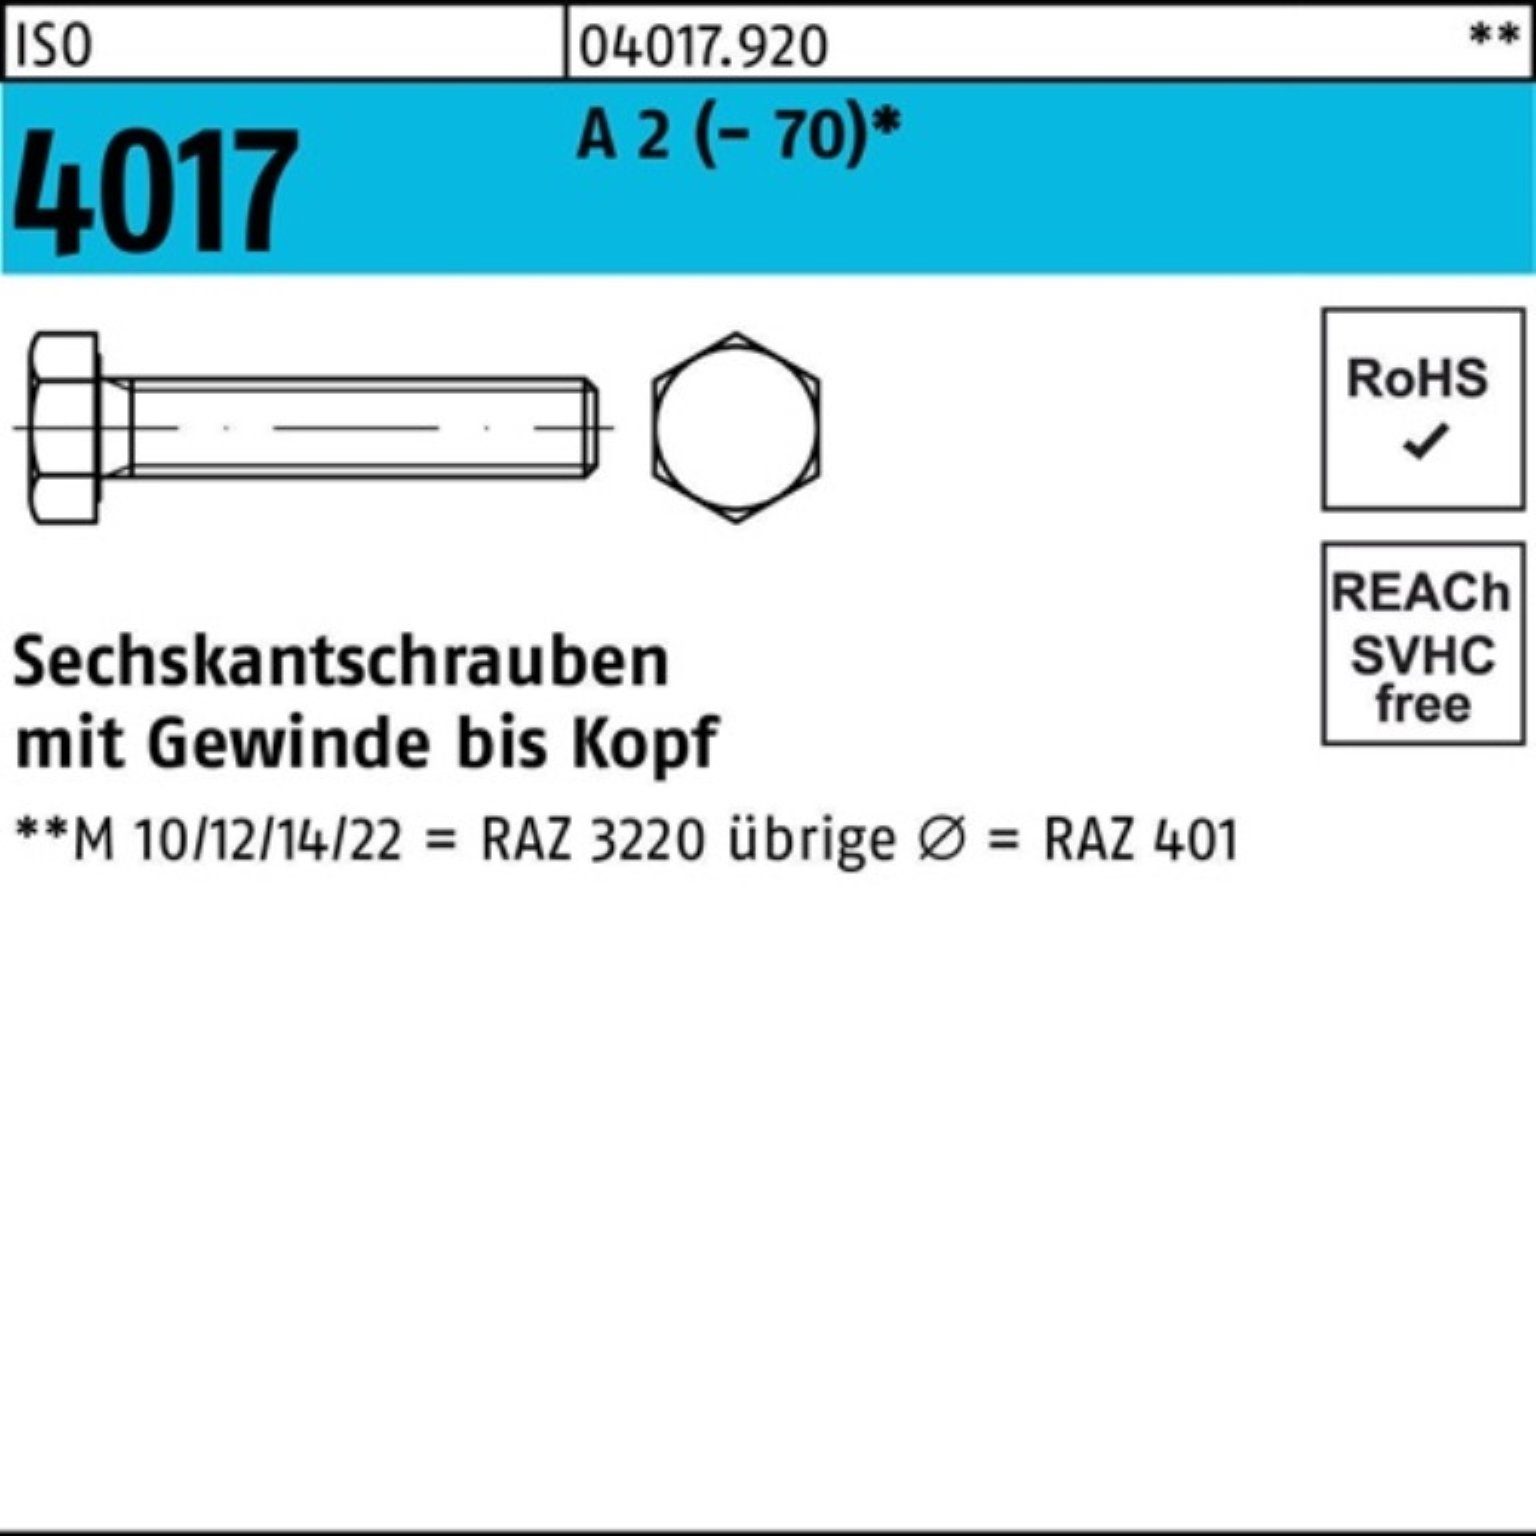 Bufab Sechskantschraube 100er Pack Sechskantschraube ISO 4017 VG M12x 70 A 2 (70) 50 Stück